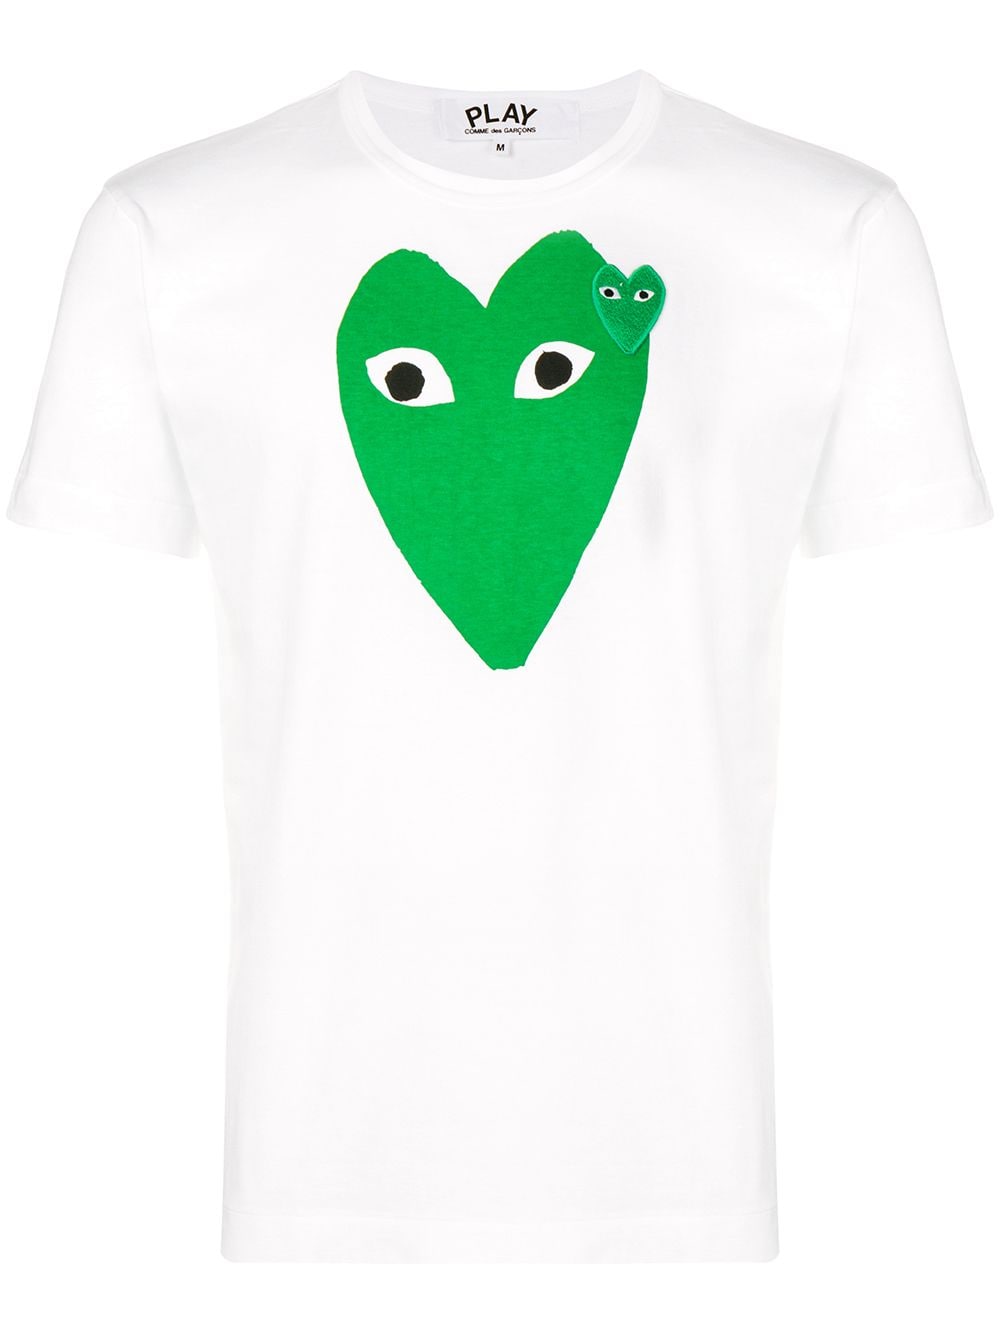 фото Comme des garçons play футболка с фирменным принтом и заплаткой в форме сердца